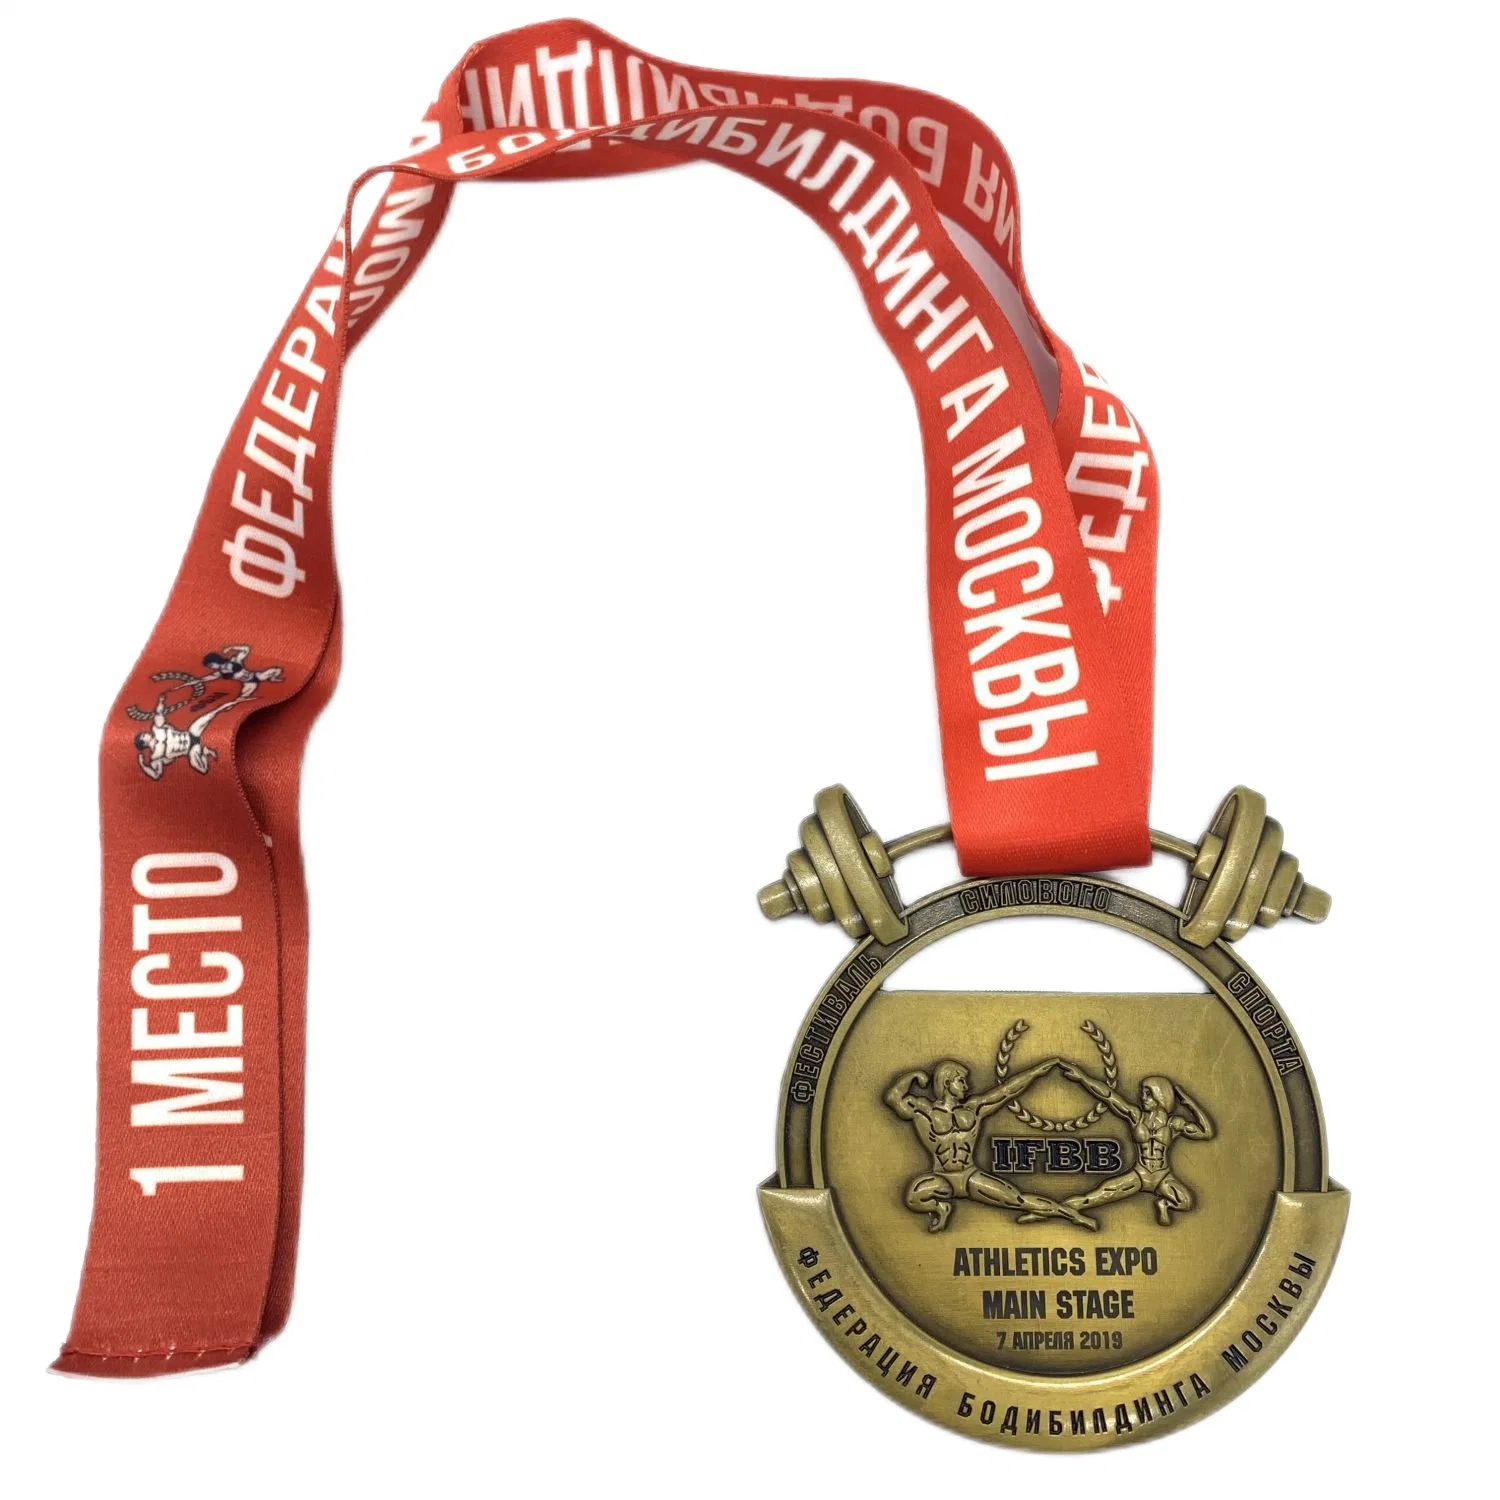 Diseño de Originales de fábrica de lujo personalizado de metal de aleación de zinc oro antiguo medallas en 3D con la cinta su propio logotipo personalizado el levantamiento de pesas Gimnasia Fitness Deporte medalla